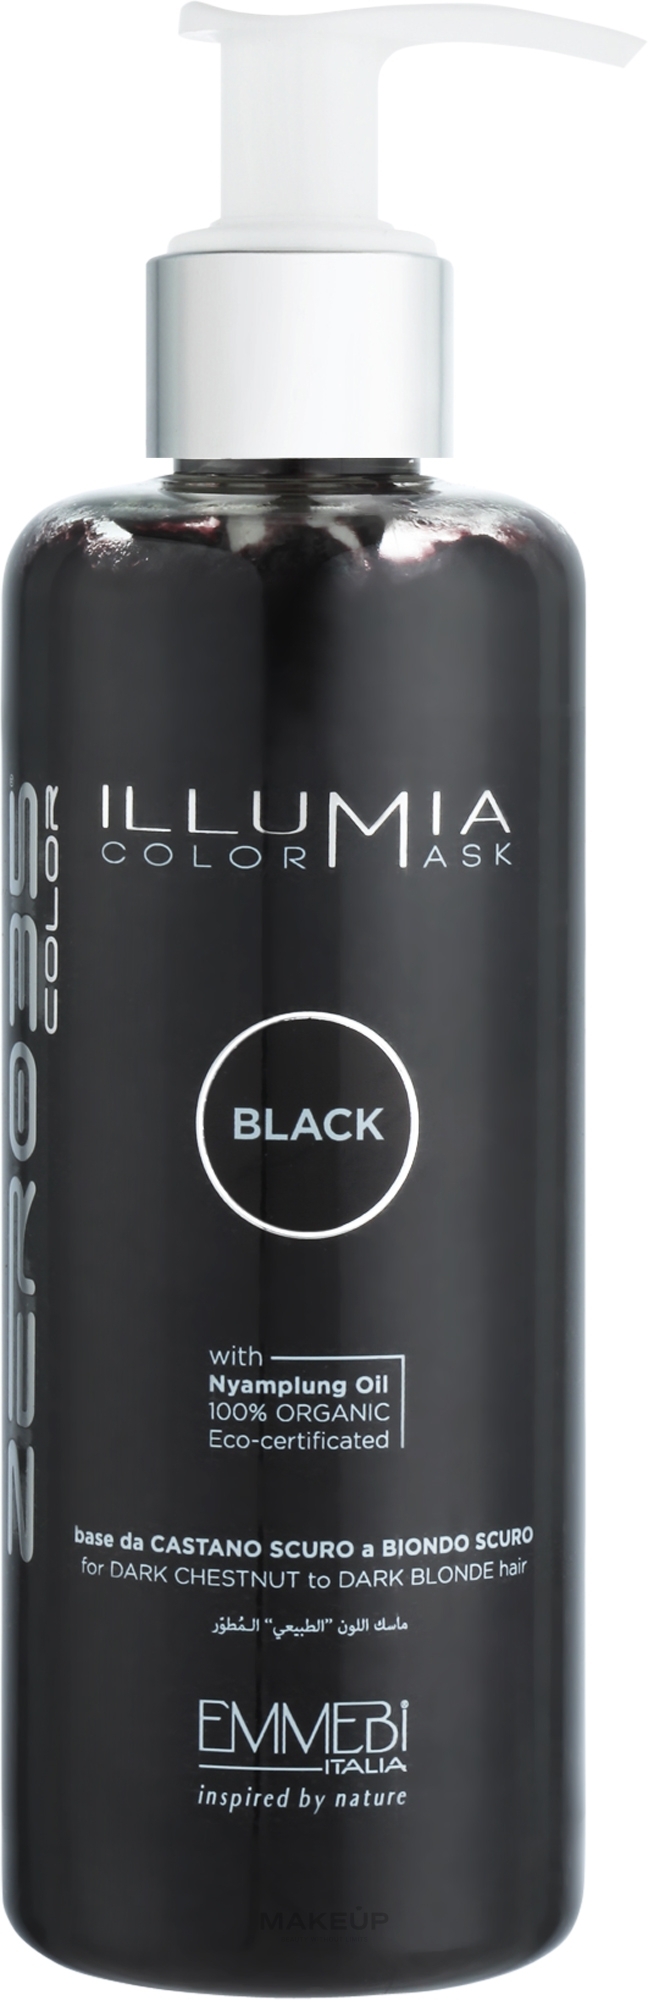 Тонирующая маска для волос - Emmebi Italia Illumia Color Mask Black — фото 300ml